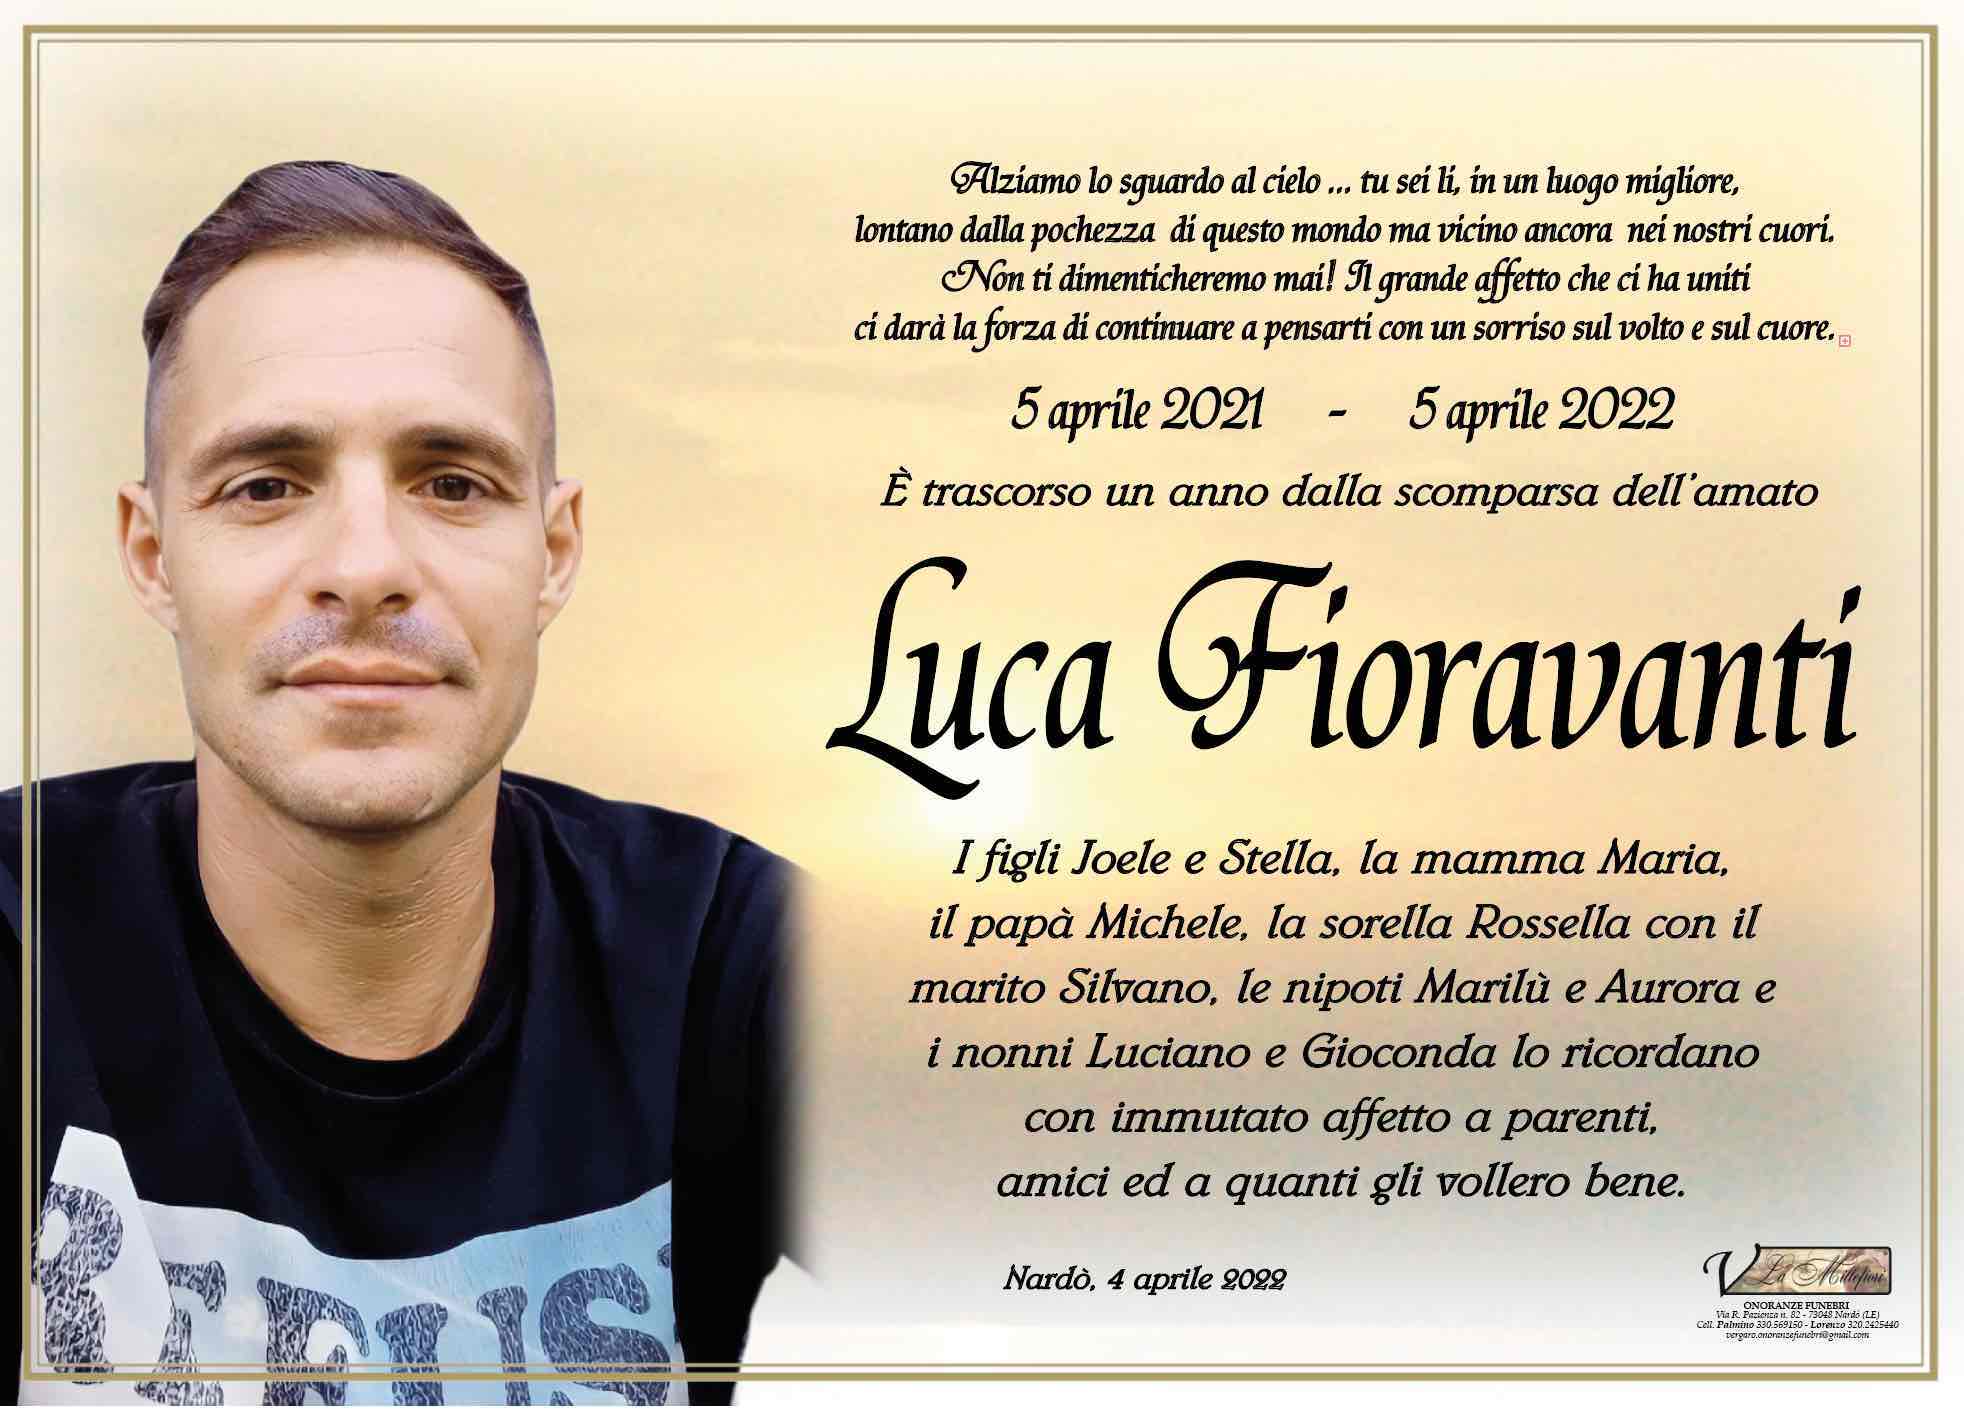 Luca Fioravanti